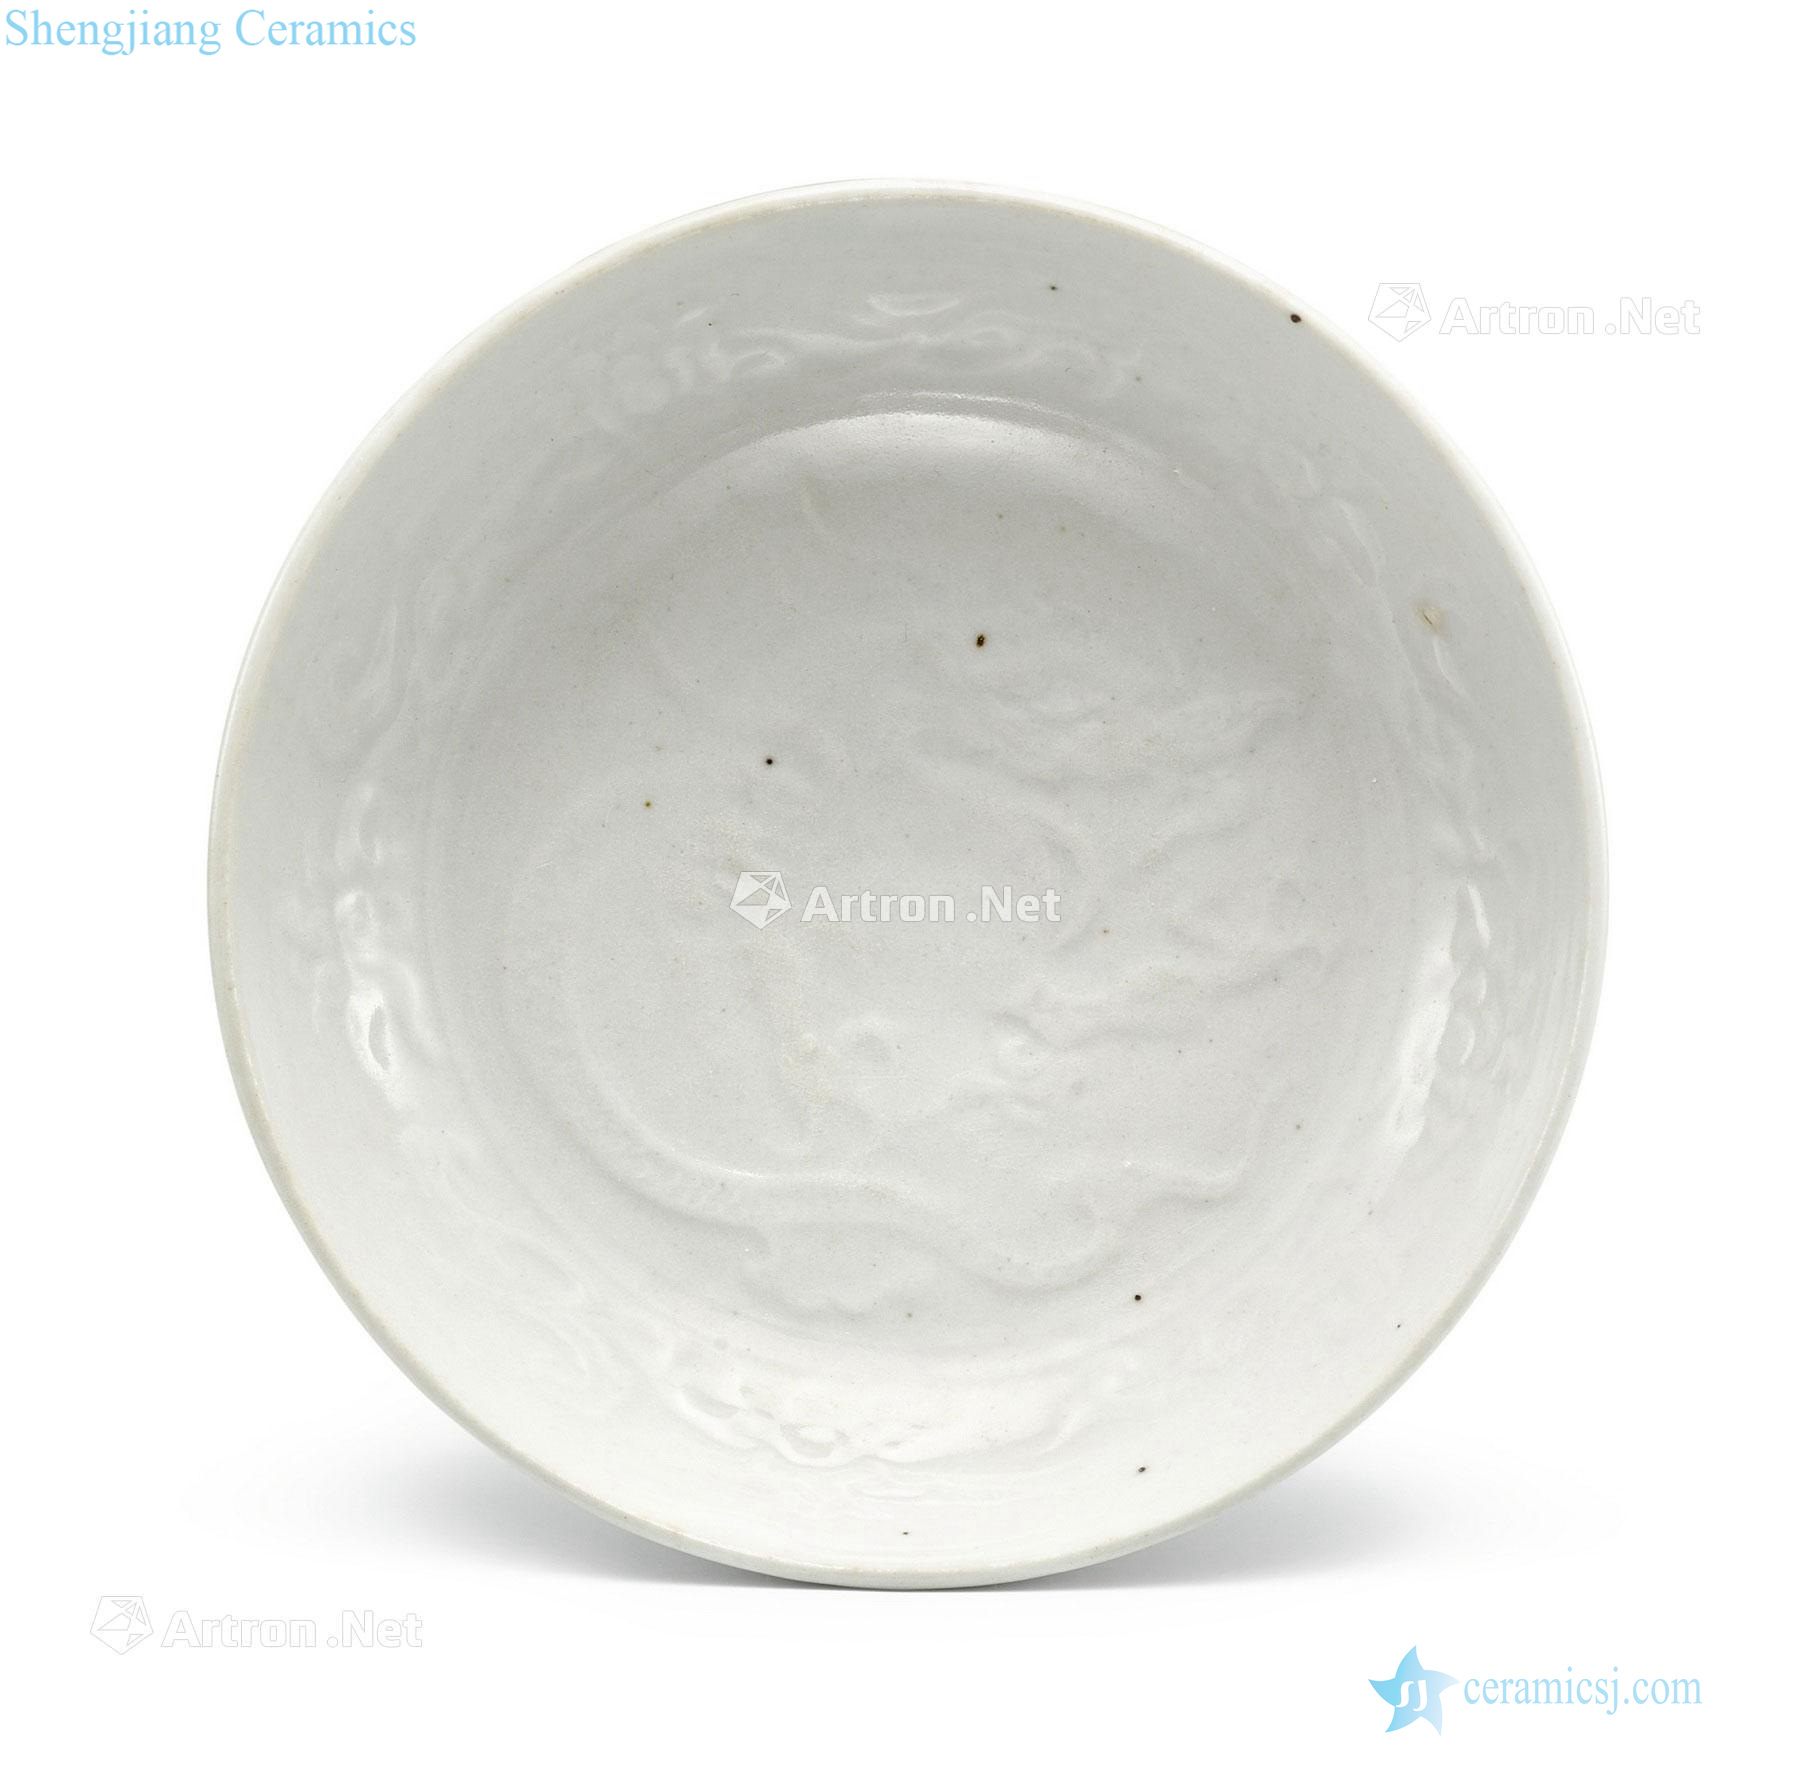 yuan White glazed printing plate dragon pattern